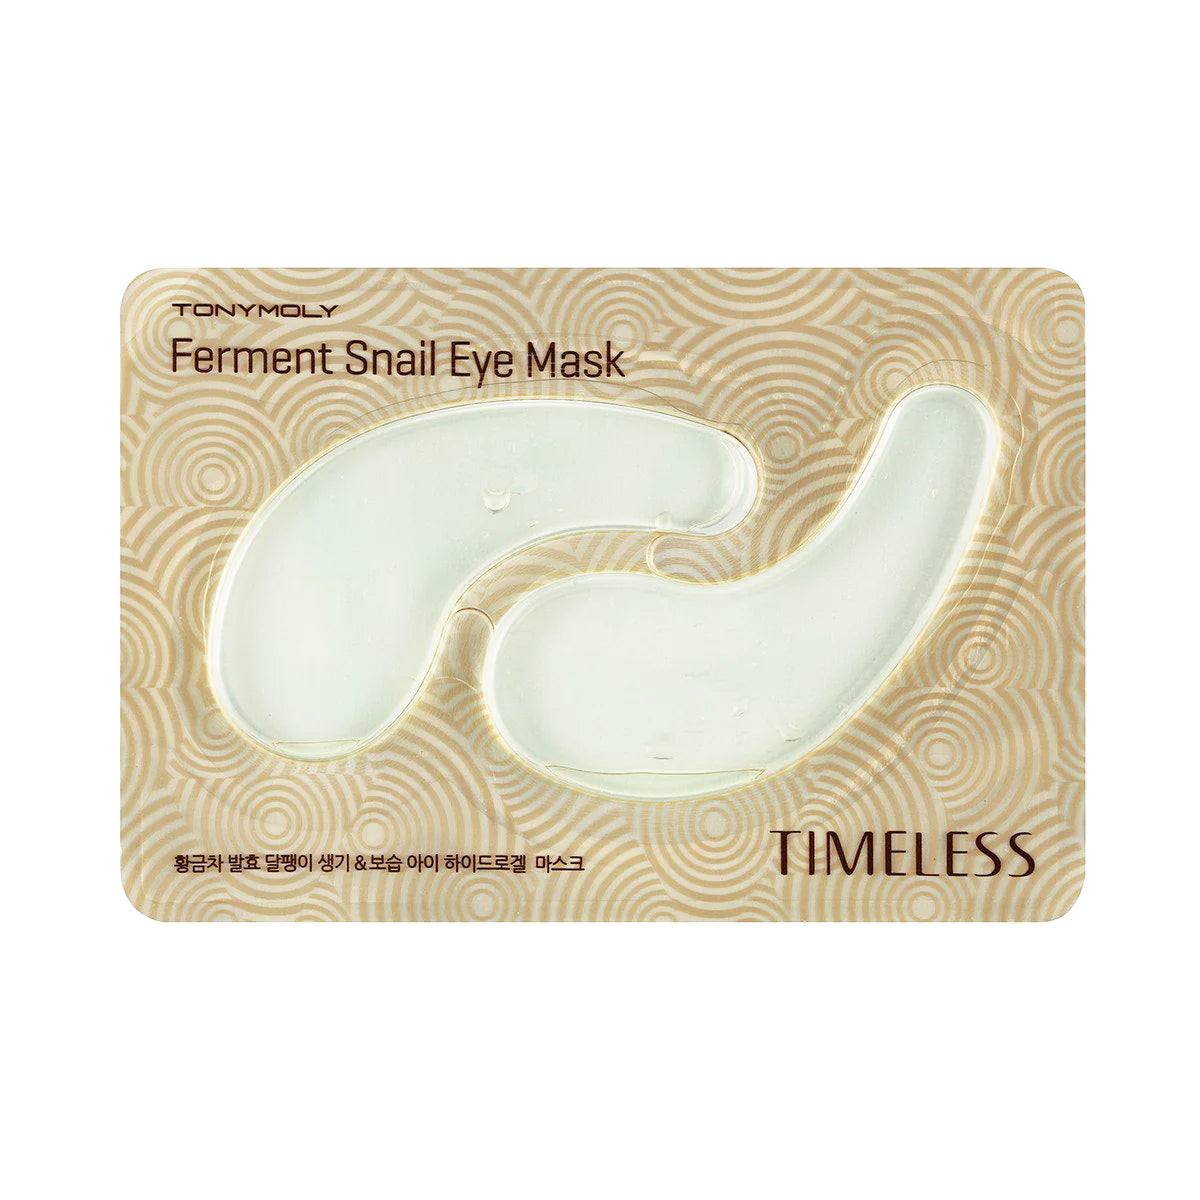 TONYMOLY Timeless Ferment Snail Eye Mask شرائح العين بالحلزون